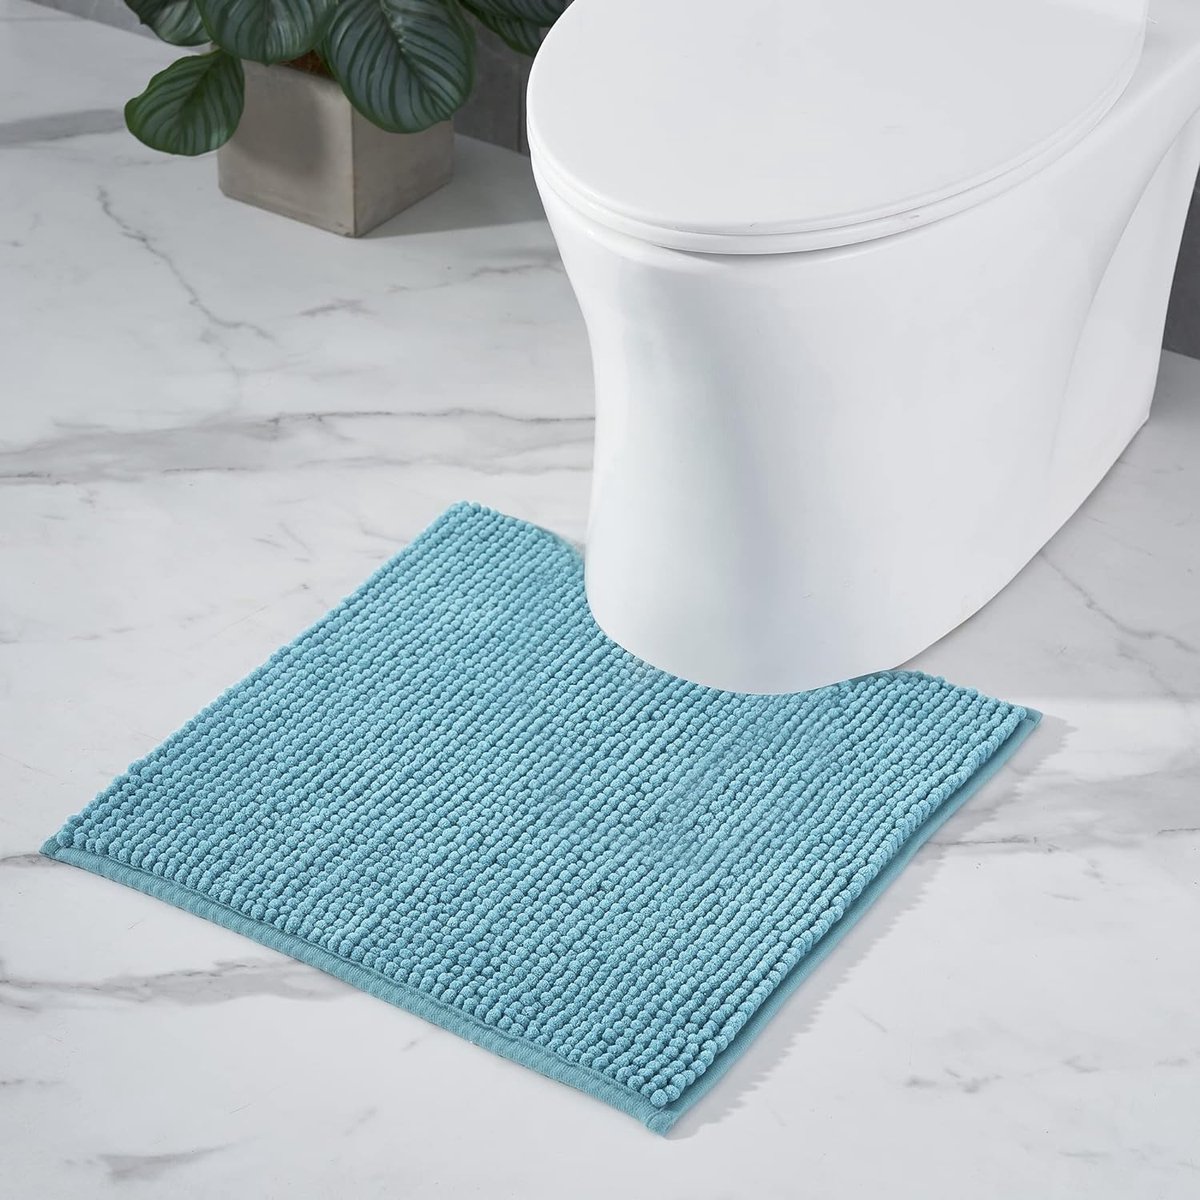 Badmat, antislip, wc-mat met uitsparing, combineerbaar als badmatset, chenille badkamertapijt, wasbaar, voor vrijstaande toiletten, petrol, turquoise, 45 x 45 cm